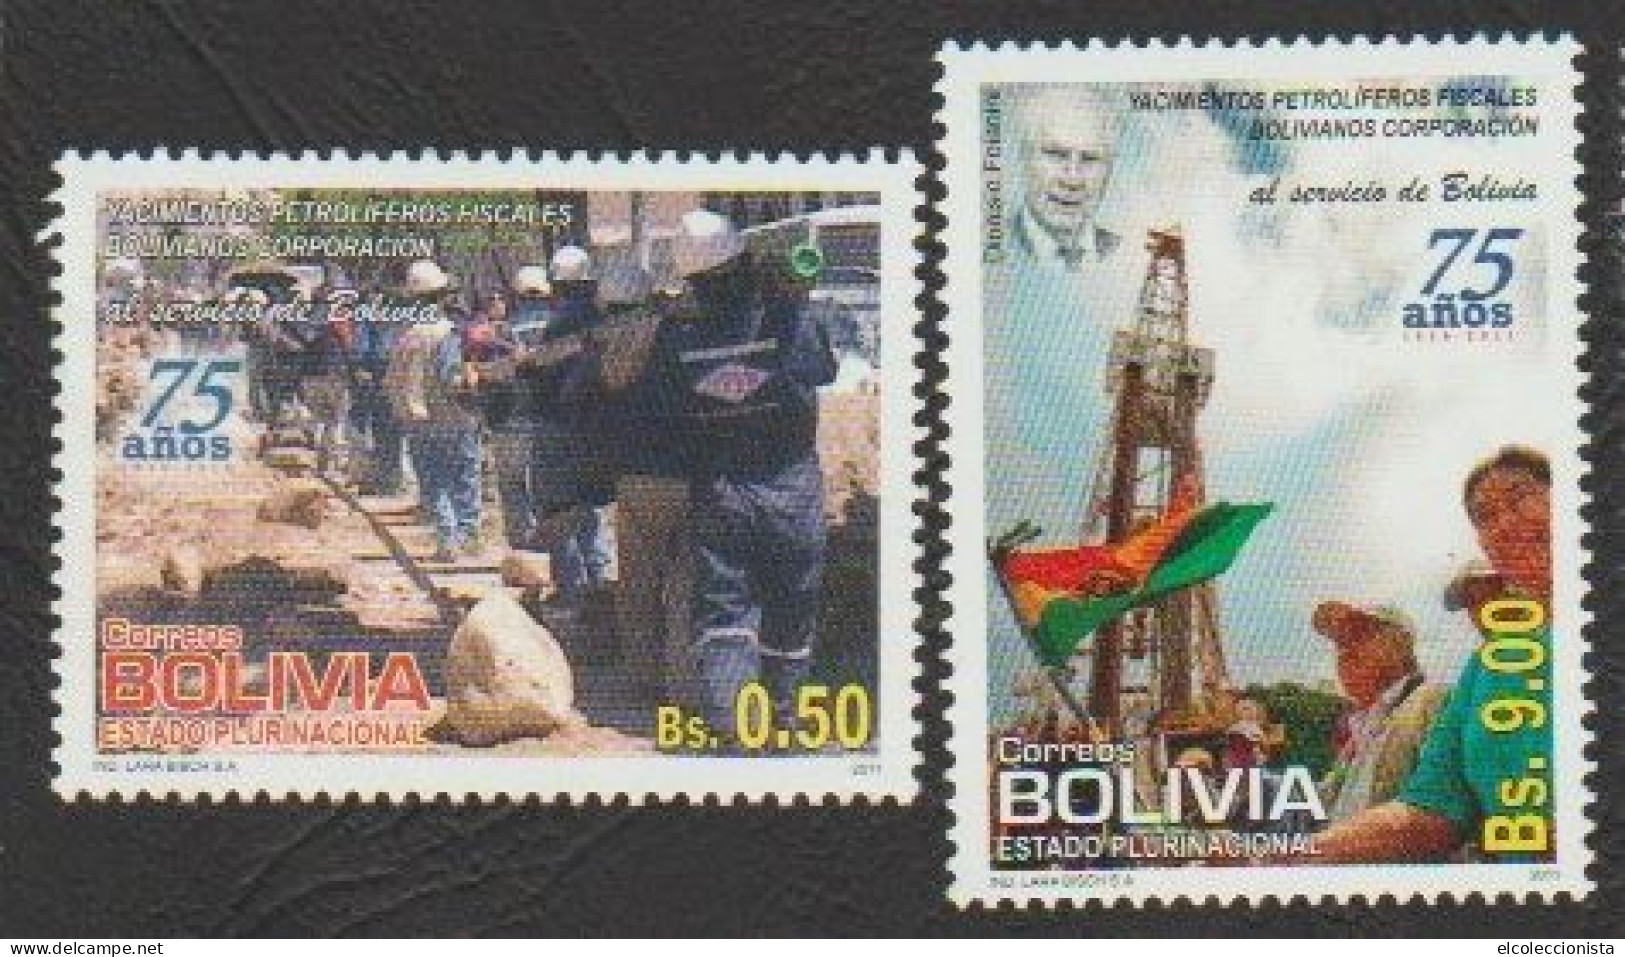 2011 Bolivia Oil Exploitation Yacimientos Petroliferos Fiscales Bolivianos 75th MNH Scott 1485 1486 - Bolivie